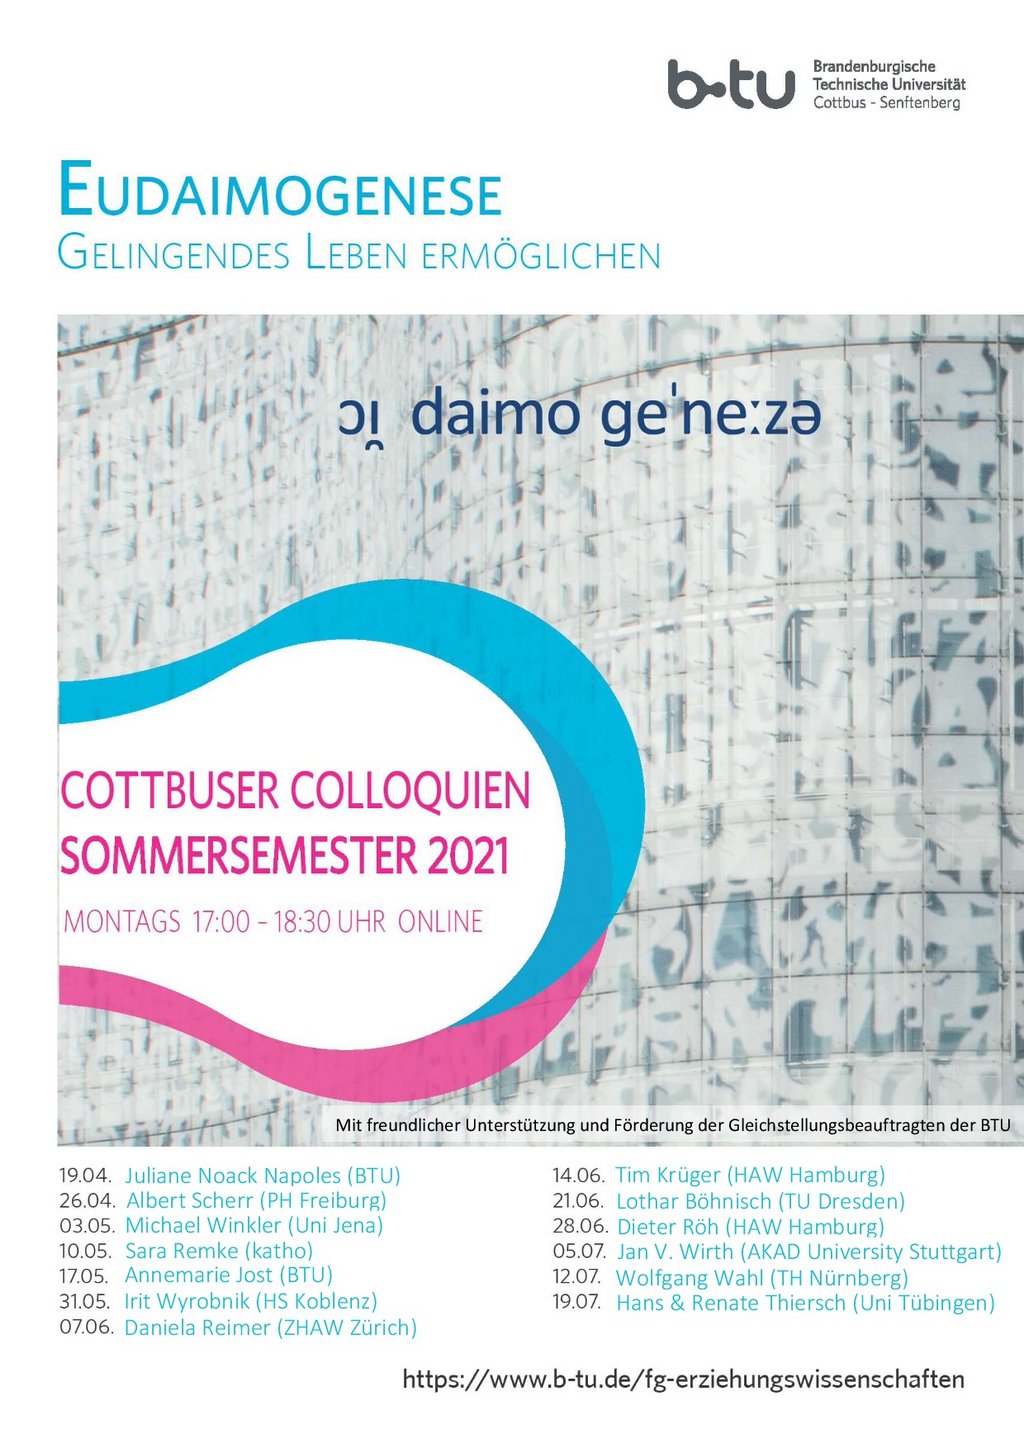 Plakat zur online Veranstaltung Cottbuser Colloquien im Sommersemester 2021 zum Thema Eudaimogenese - Gelingendes Leben ermöglichen